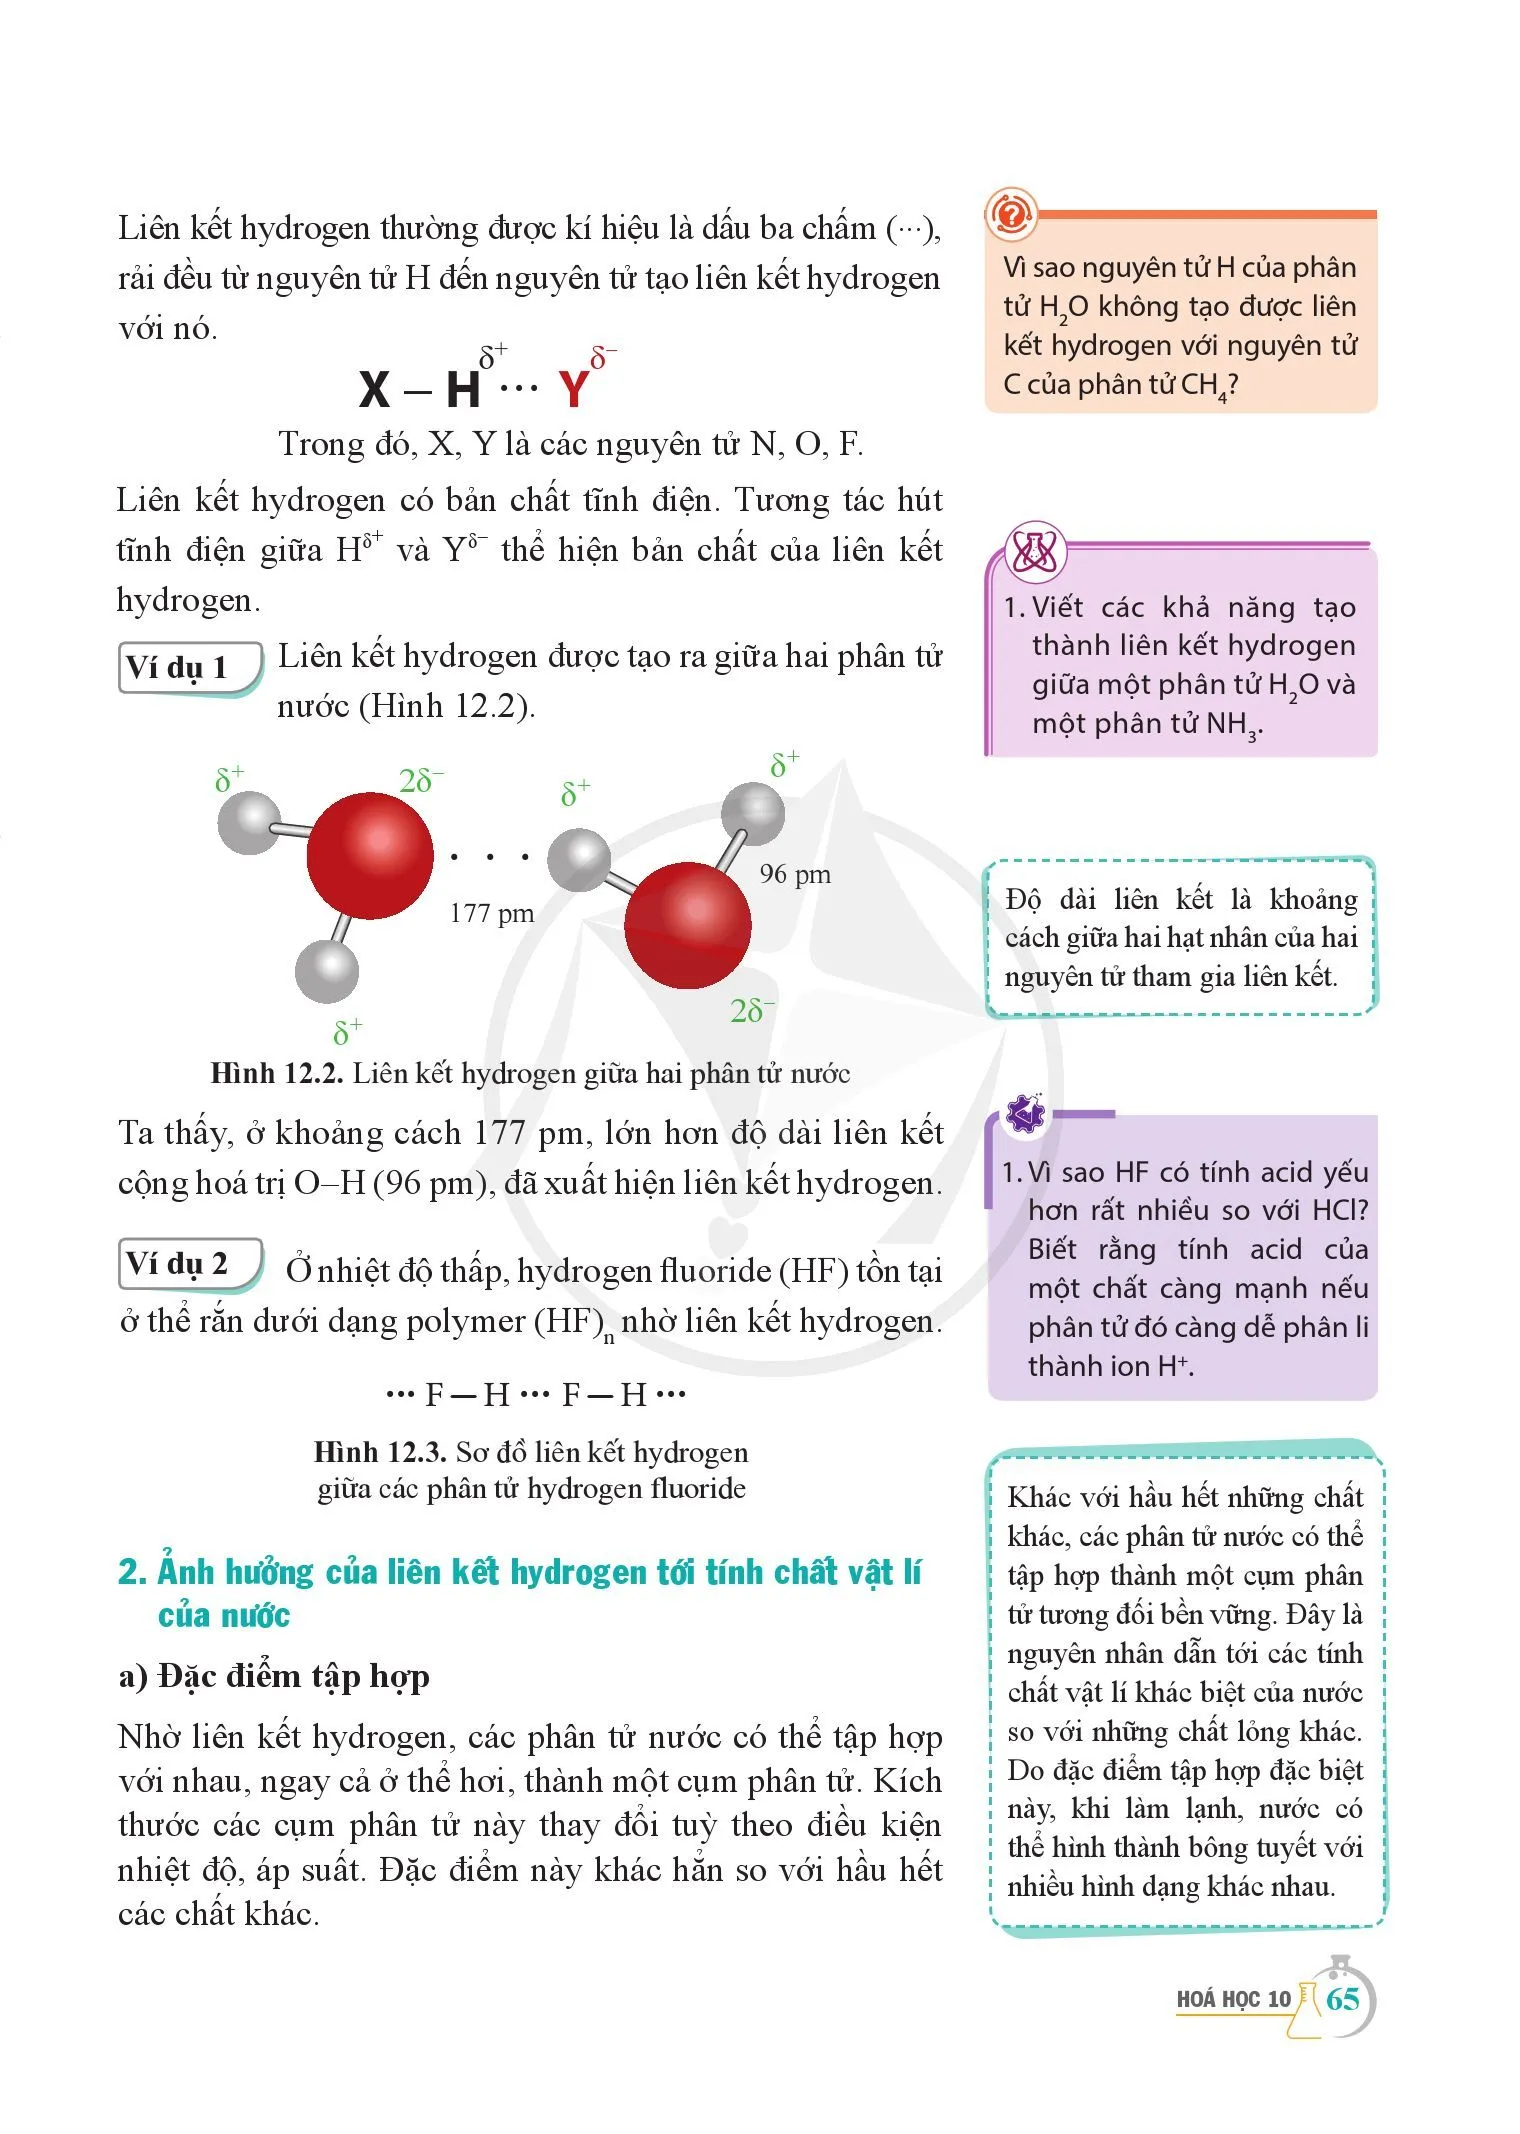 Bài 12. Liên kết hydrogen và tương tác van der Waals..